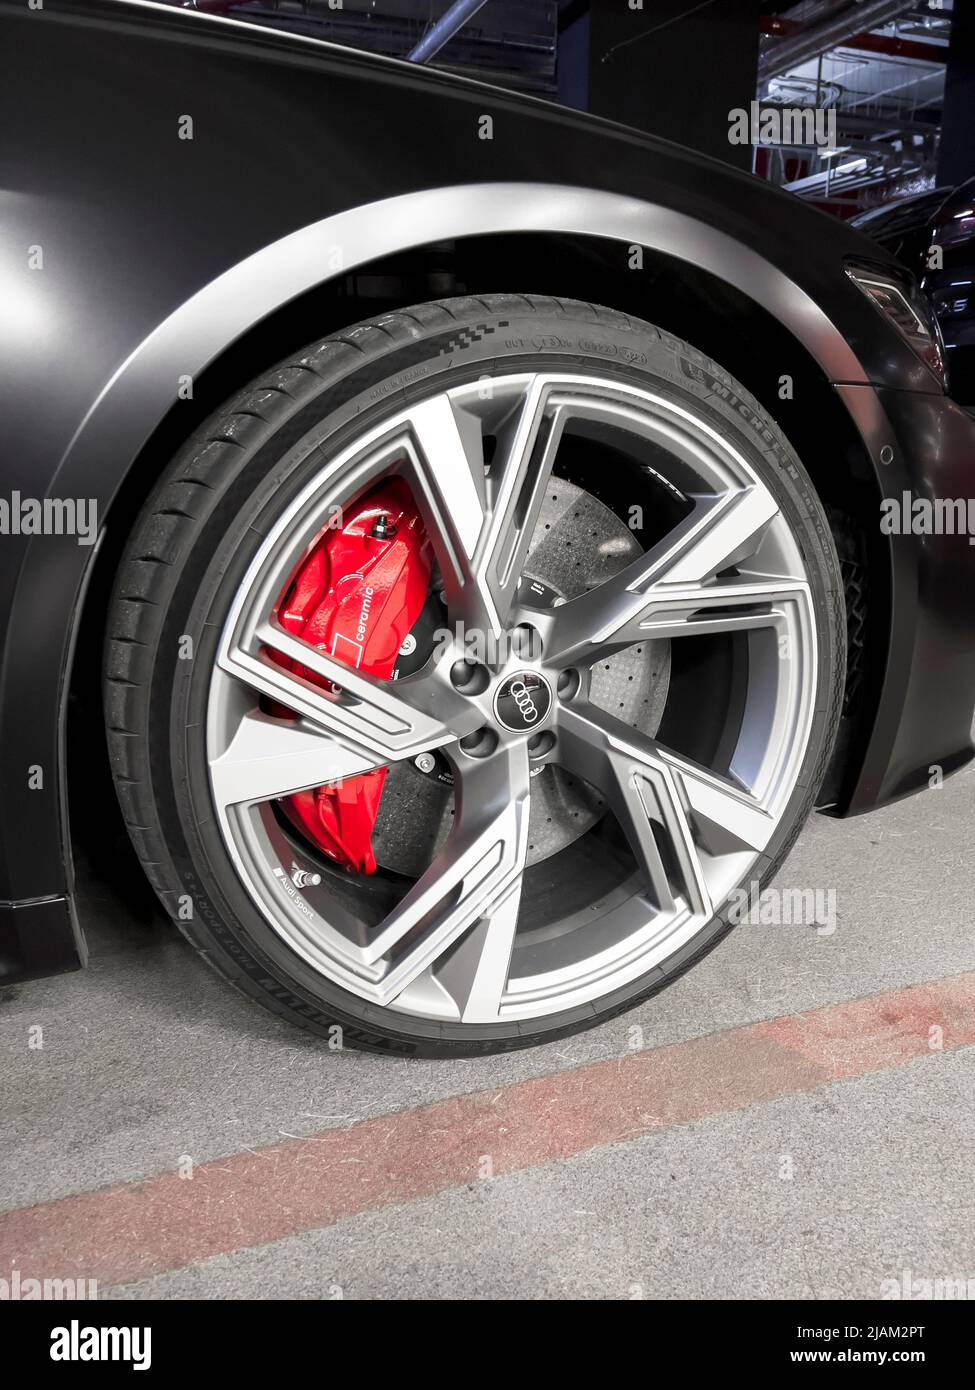 Saint-Pétersbourg, Russie,7 mai 2022 : Audi RS 6 avant détails extérieurs.  Pneu et jante en alliage. Freins carbone-céramique. Détails sur l'extérieur  de la voiture Photo Stock - Alamy